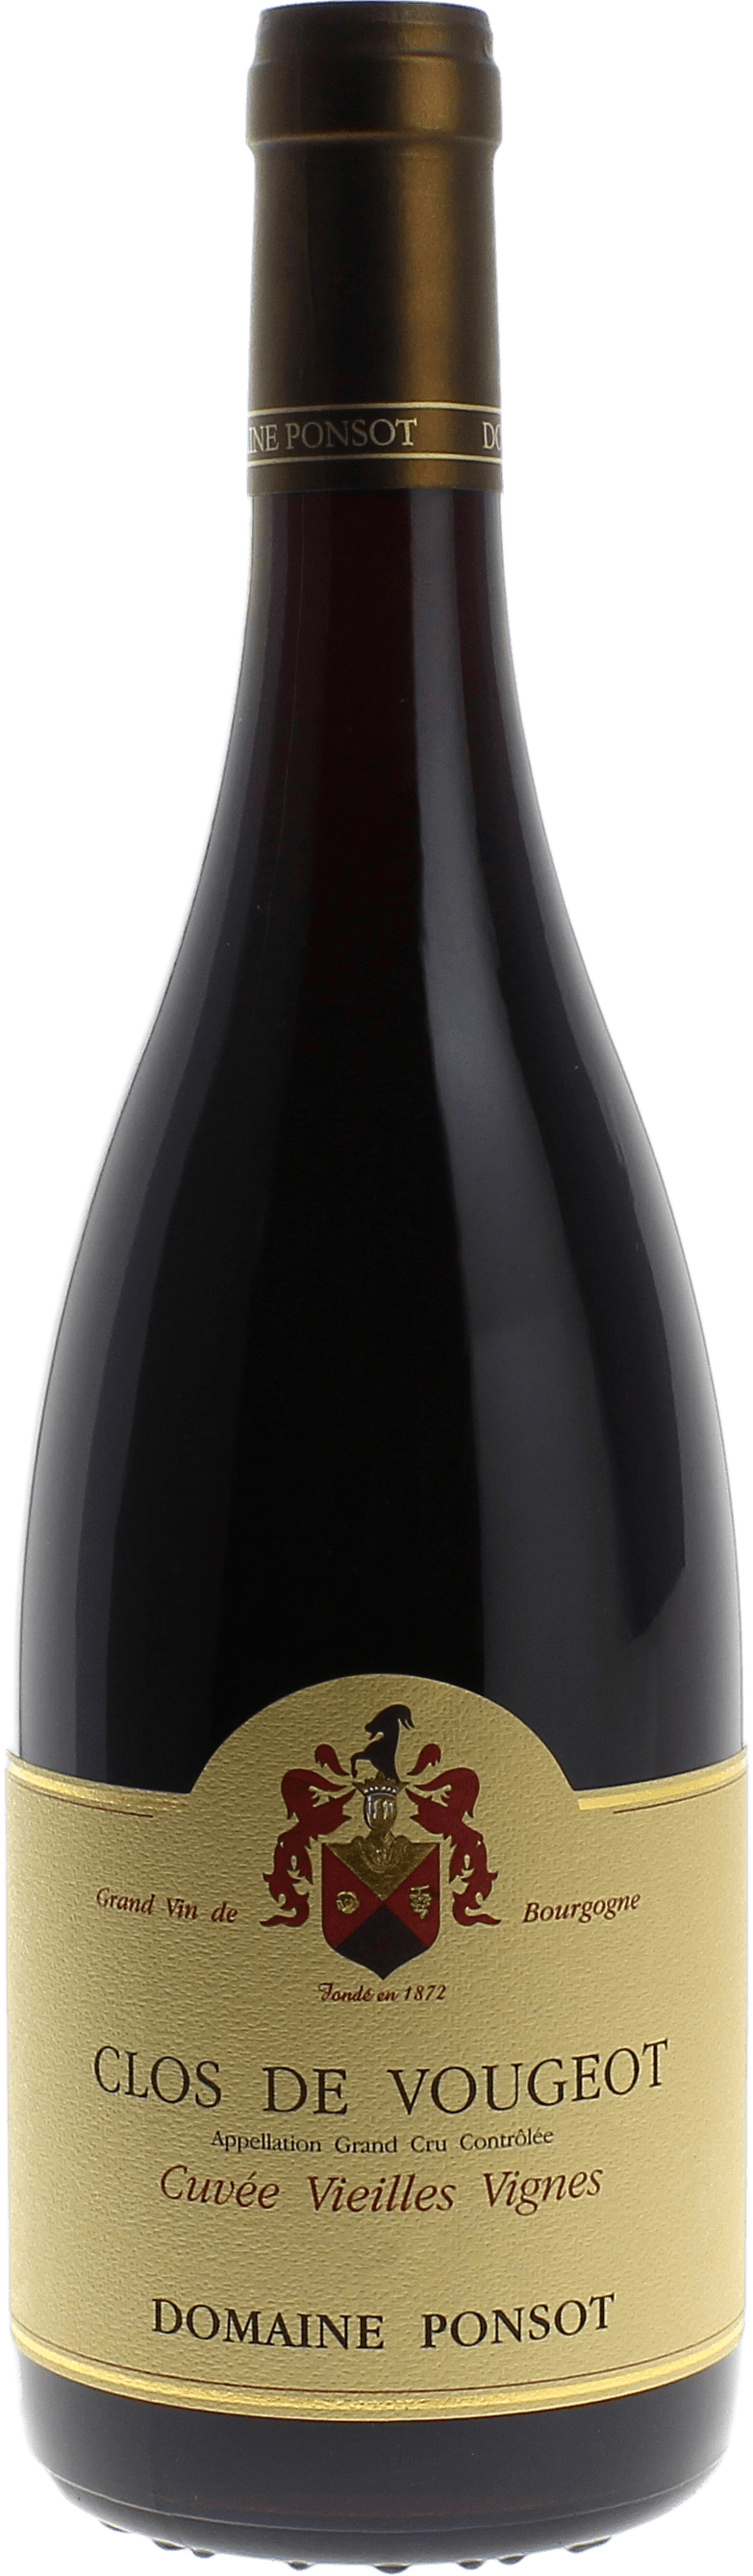 Clos de vougeot grand cru cuve vieilles vignes 2014 Domaine PONSOT, Bourgogne rouge